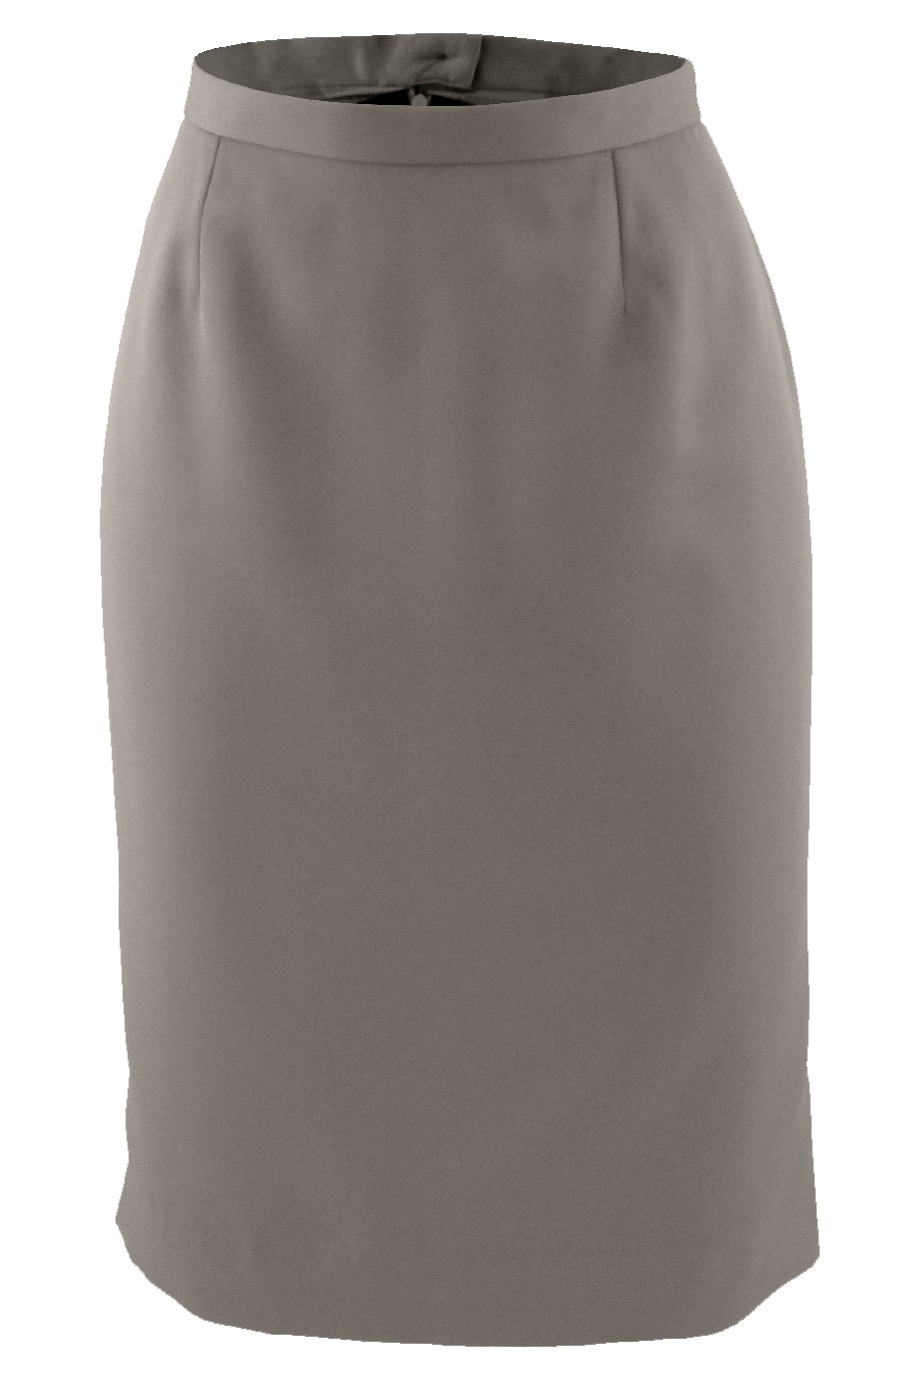 Edwards Garment 9792 - Women's Microfiber Skirt